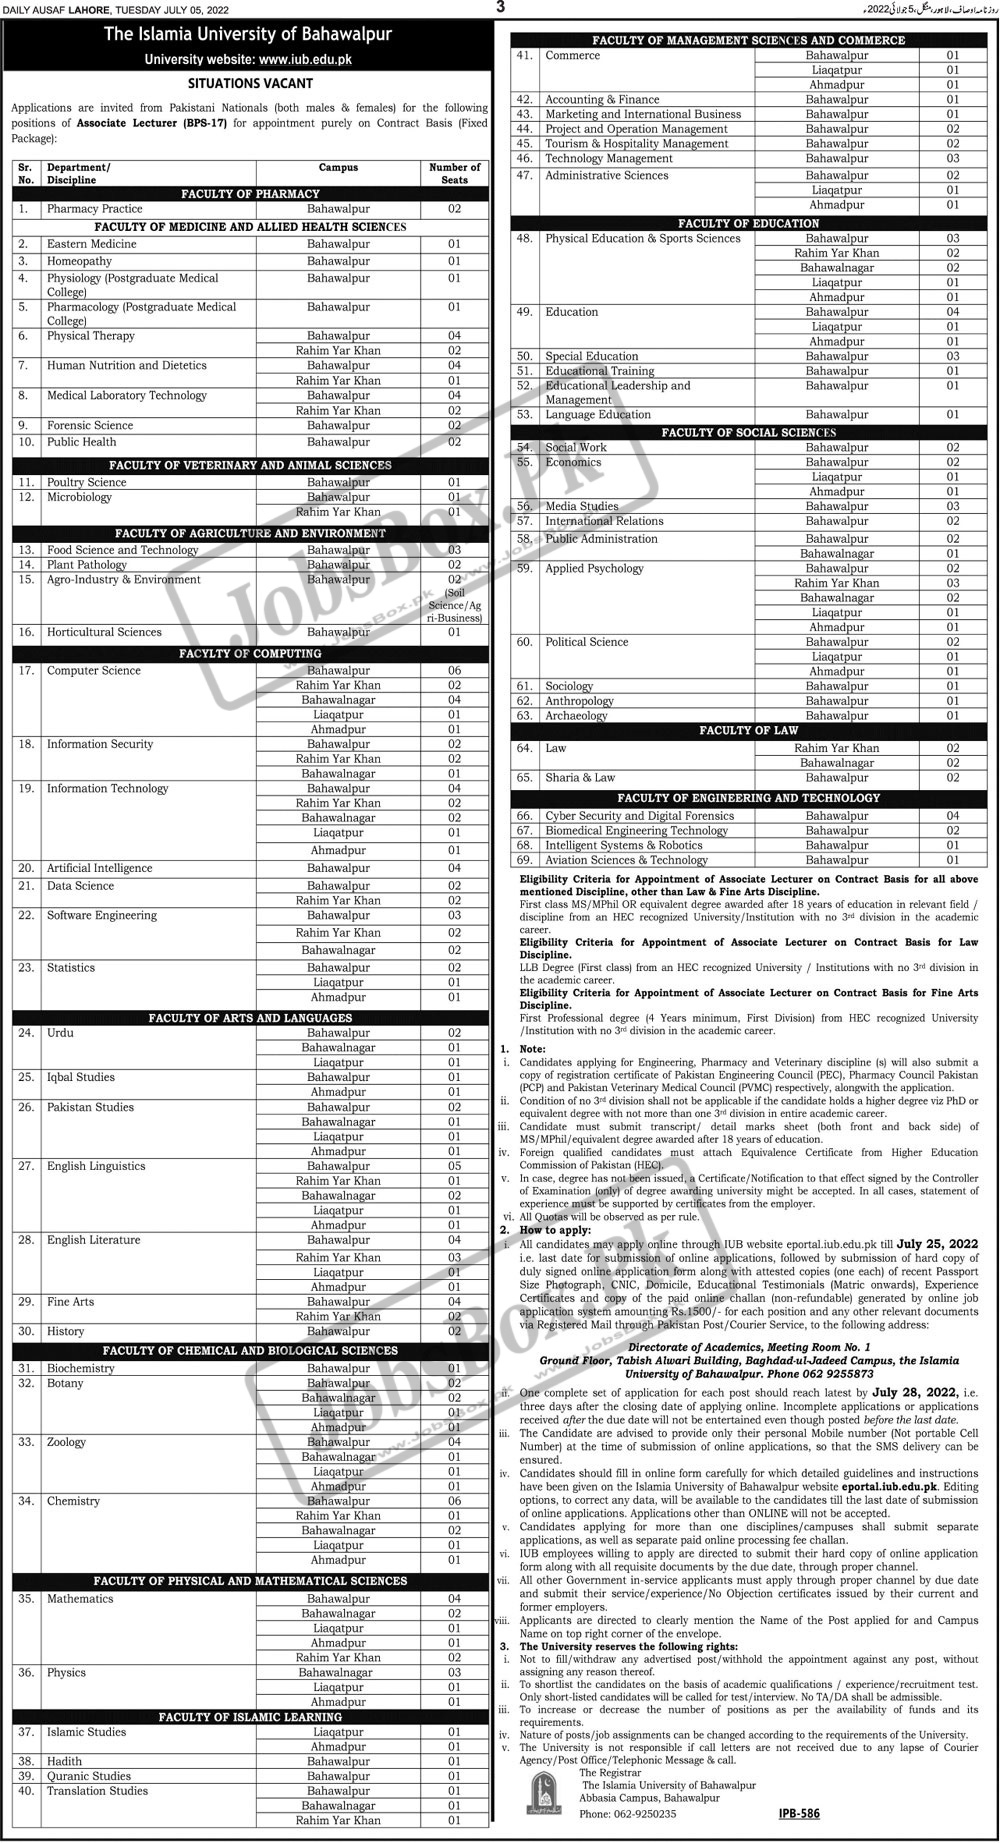 IUB Jobs 2022 - eportal.iub.edu.pk - IUB Career - Islamia University of Bahawalpur Jobs 2022 - IUB New Jobs 2022